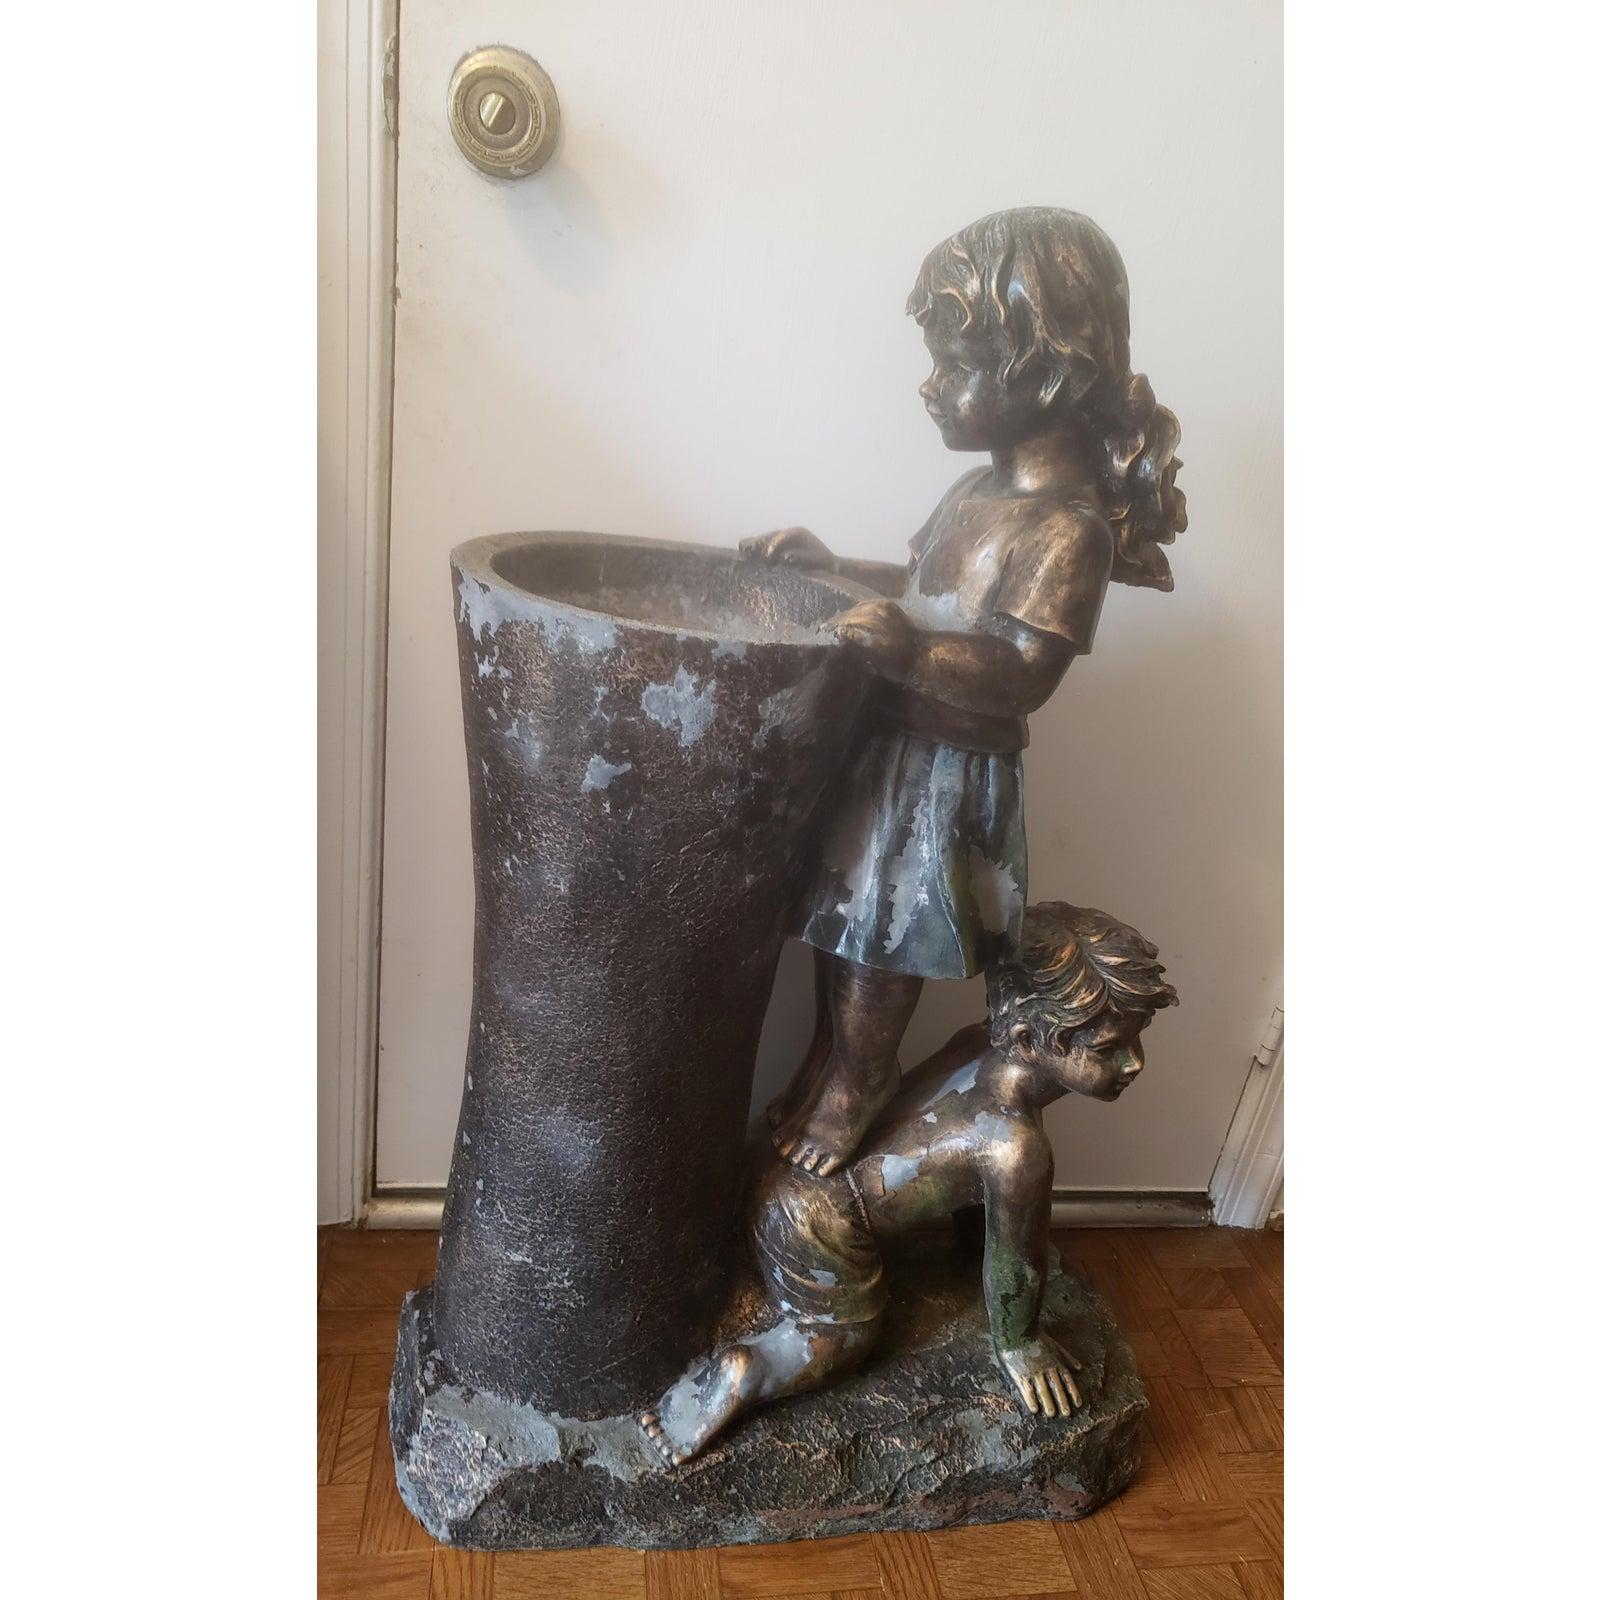 Vieille statue de garçon et fille avec fontaine d'eau.
Statue d'un garçon et d'une fille dans une fontaine d'eau.
Fabriqué en résine et fibre de verre avec une finition bronze. Quelques pertes de finition, visibles sur la photo, dues à l'âge.